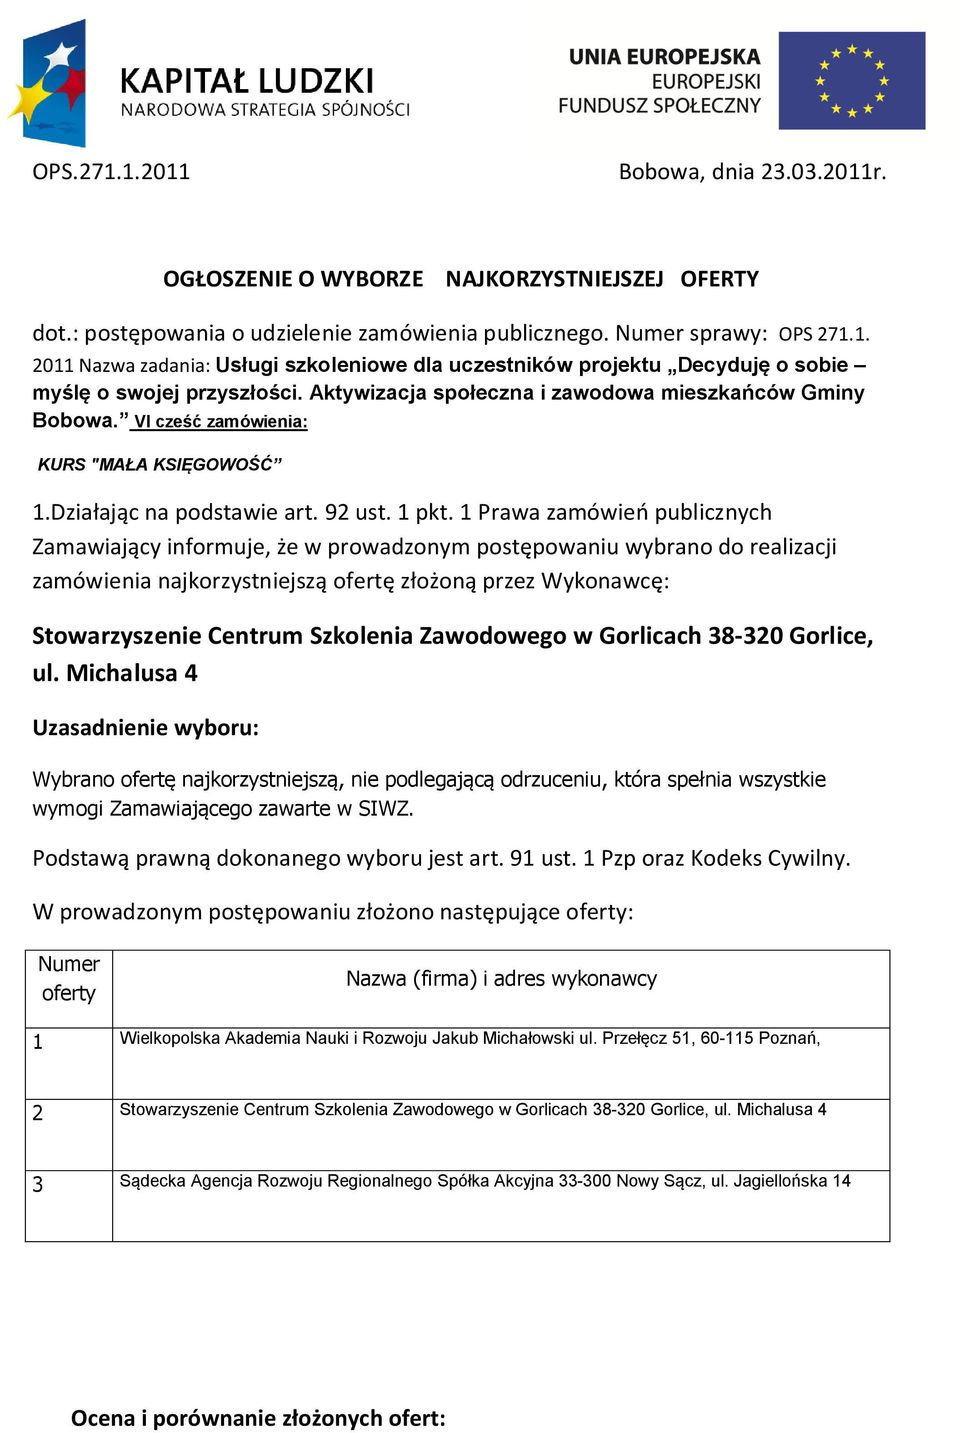 Zawodowego w Gorlicach 38-320 Gorlice, ul. Michalusa 4 Wybrano ofertę najkorzystniejszą, nie podlegającą odrzuceniu, która spełnia wszystkie wymogi Zamawiającego zawarte w SIWZ.